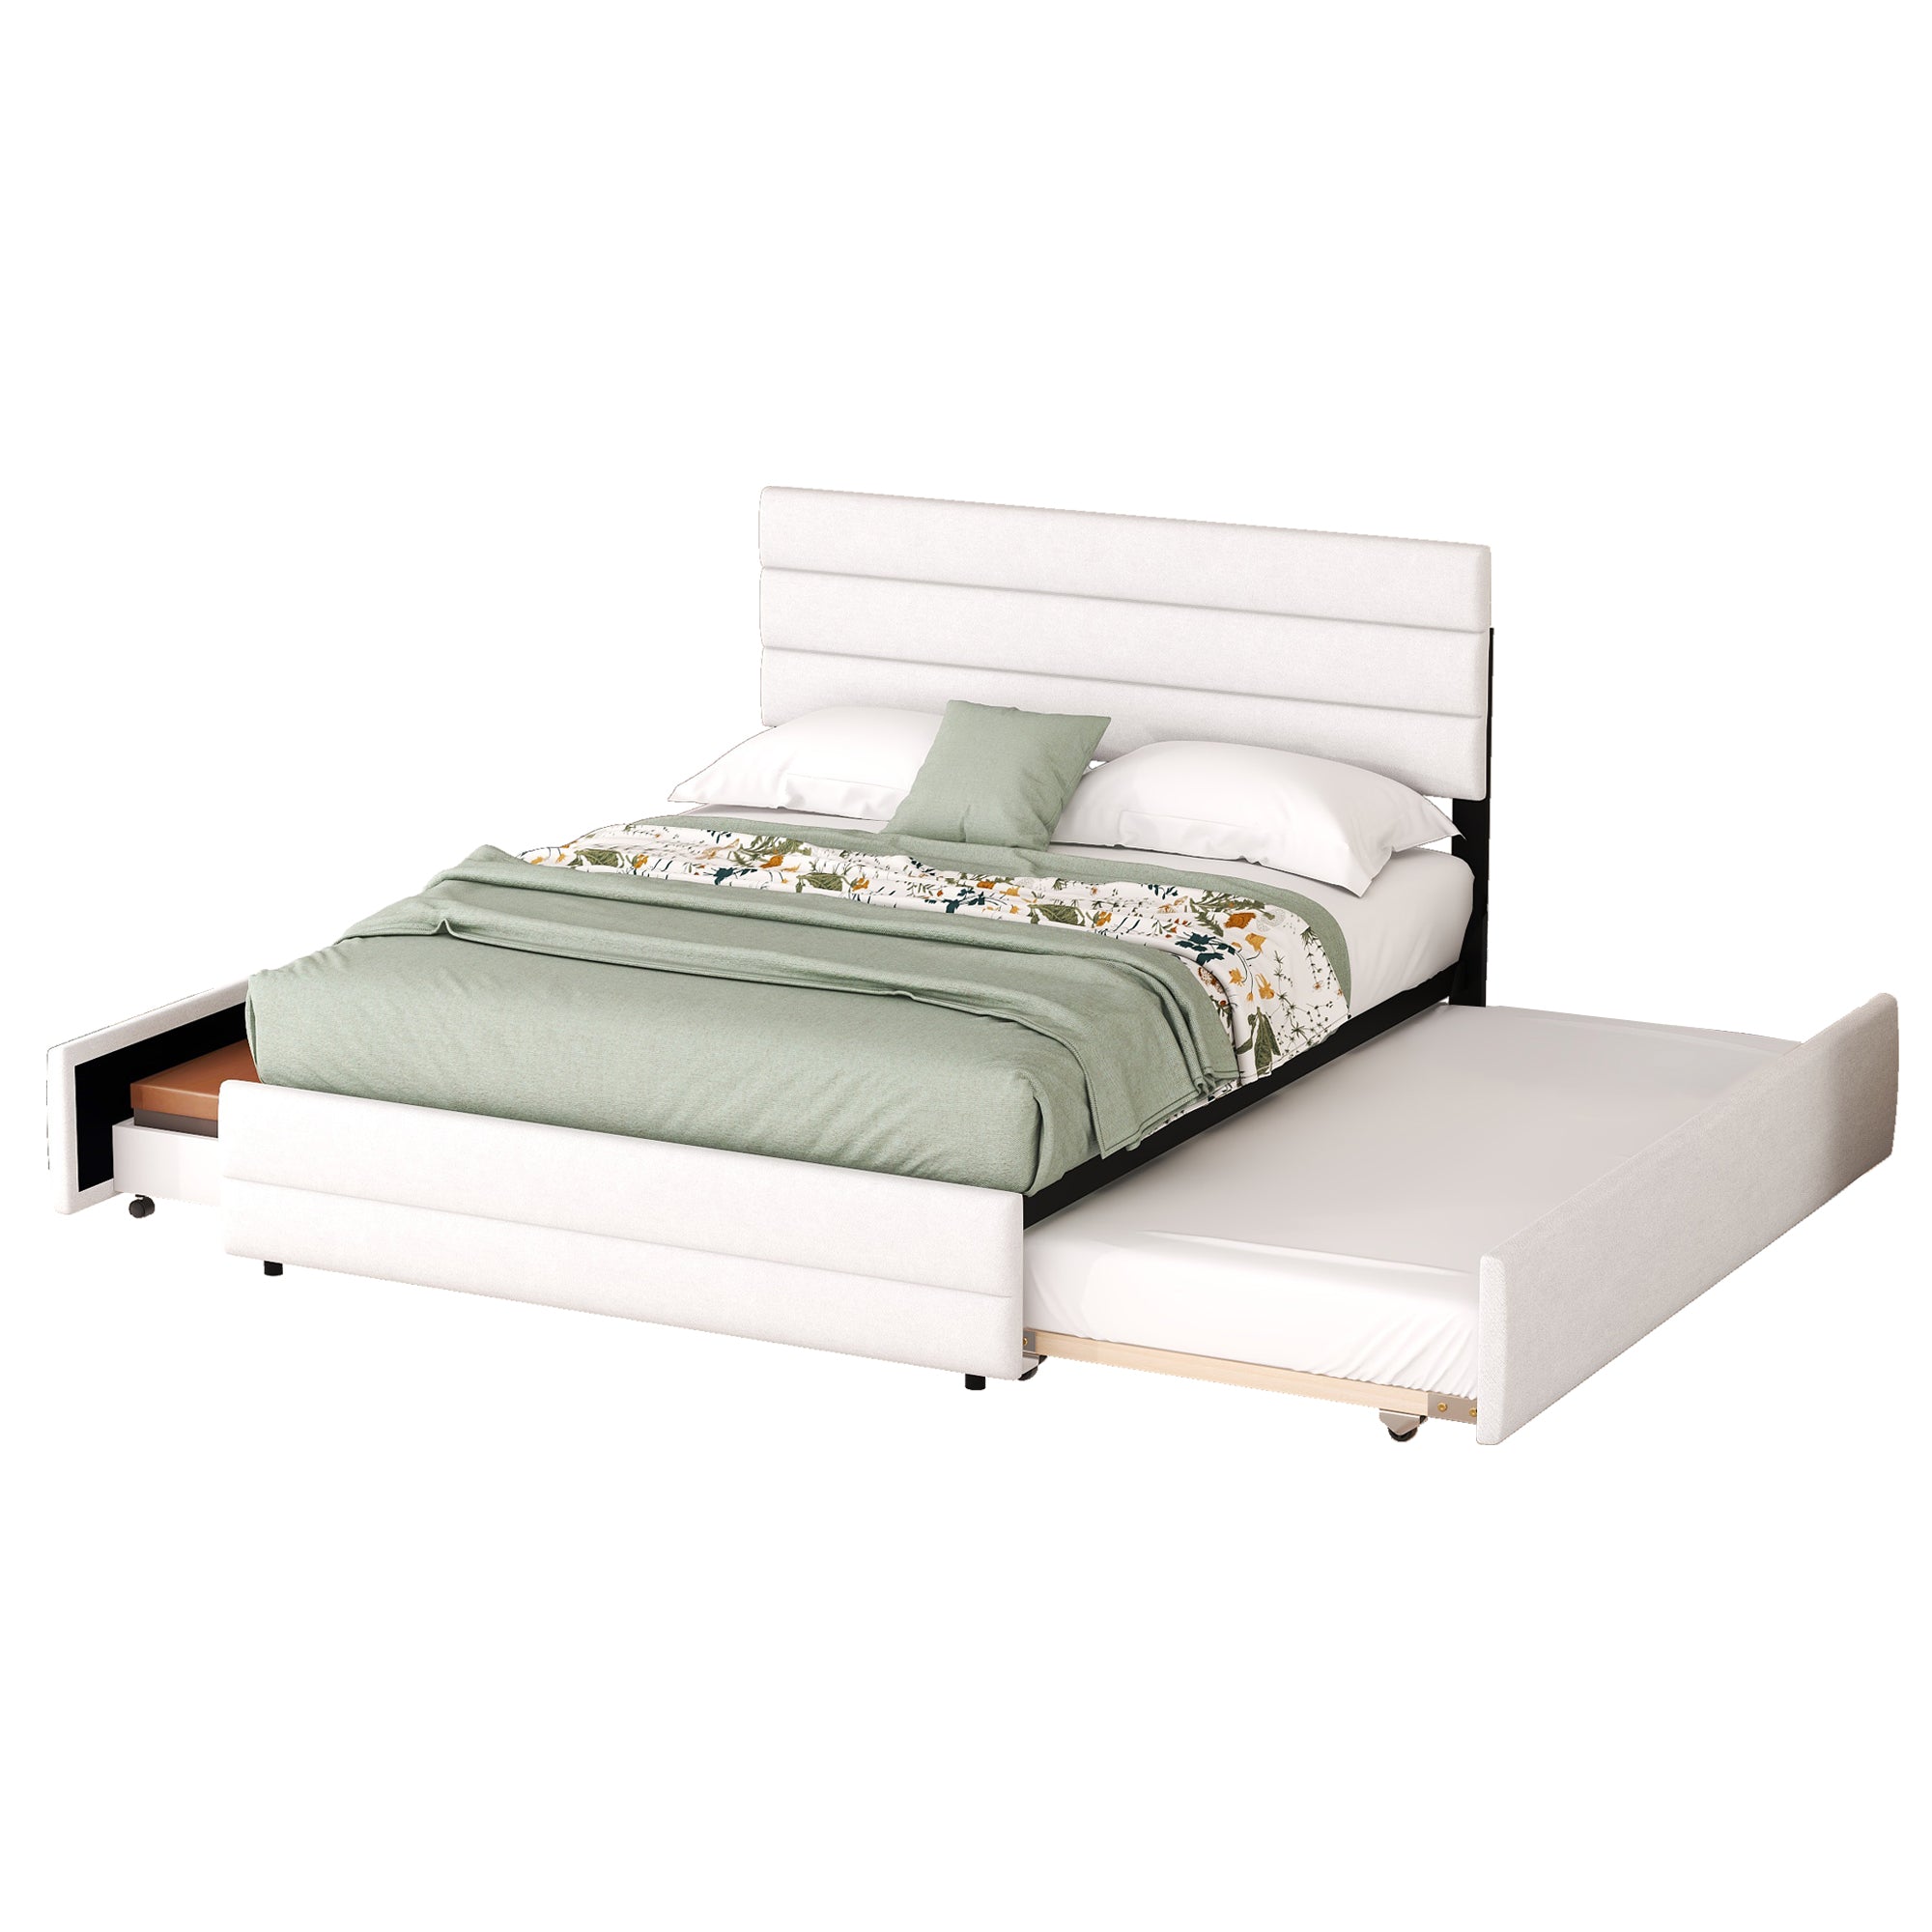 okwish 140 x 200 cm Plattformbett, gepolstertes Bett, mit Zwei-Personen-Brosche und zwei Schubladen, weiß